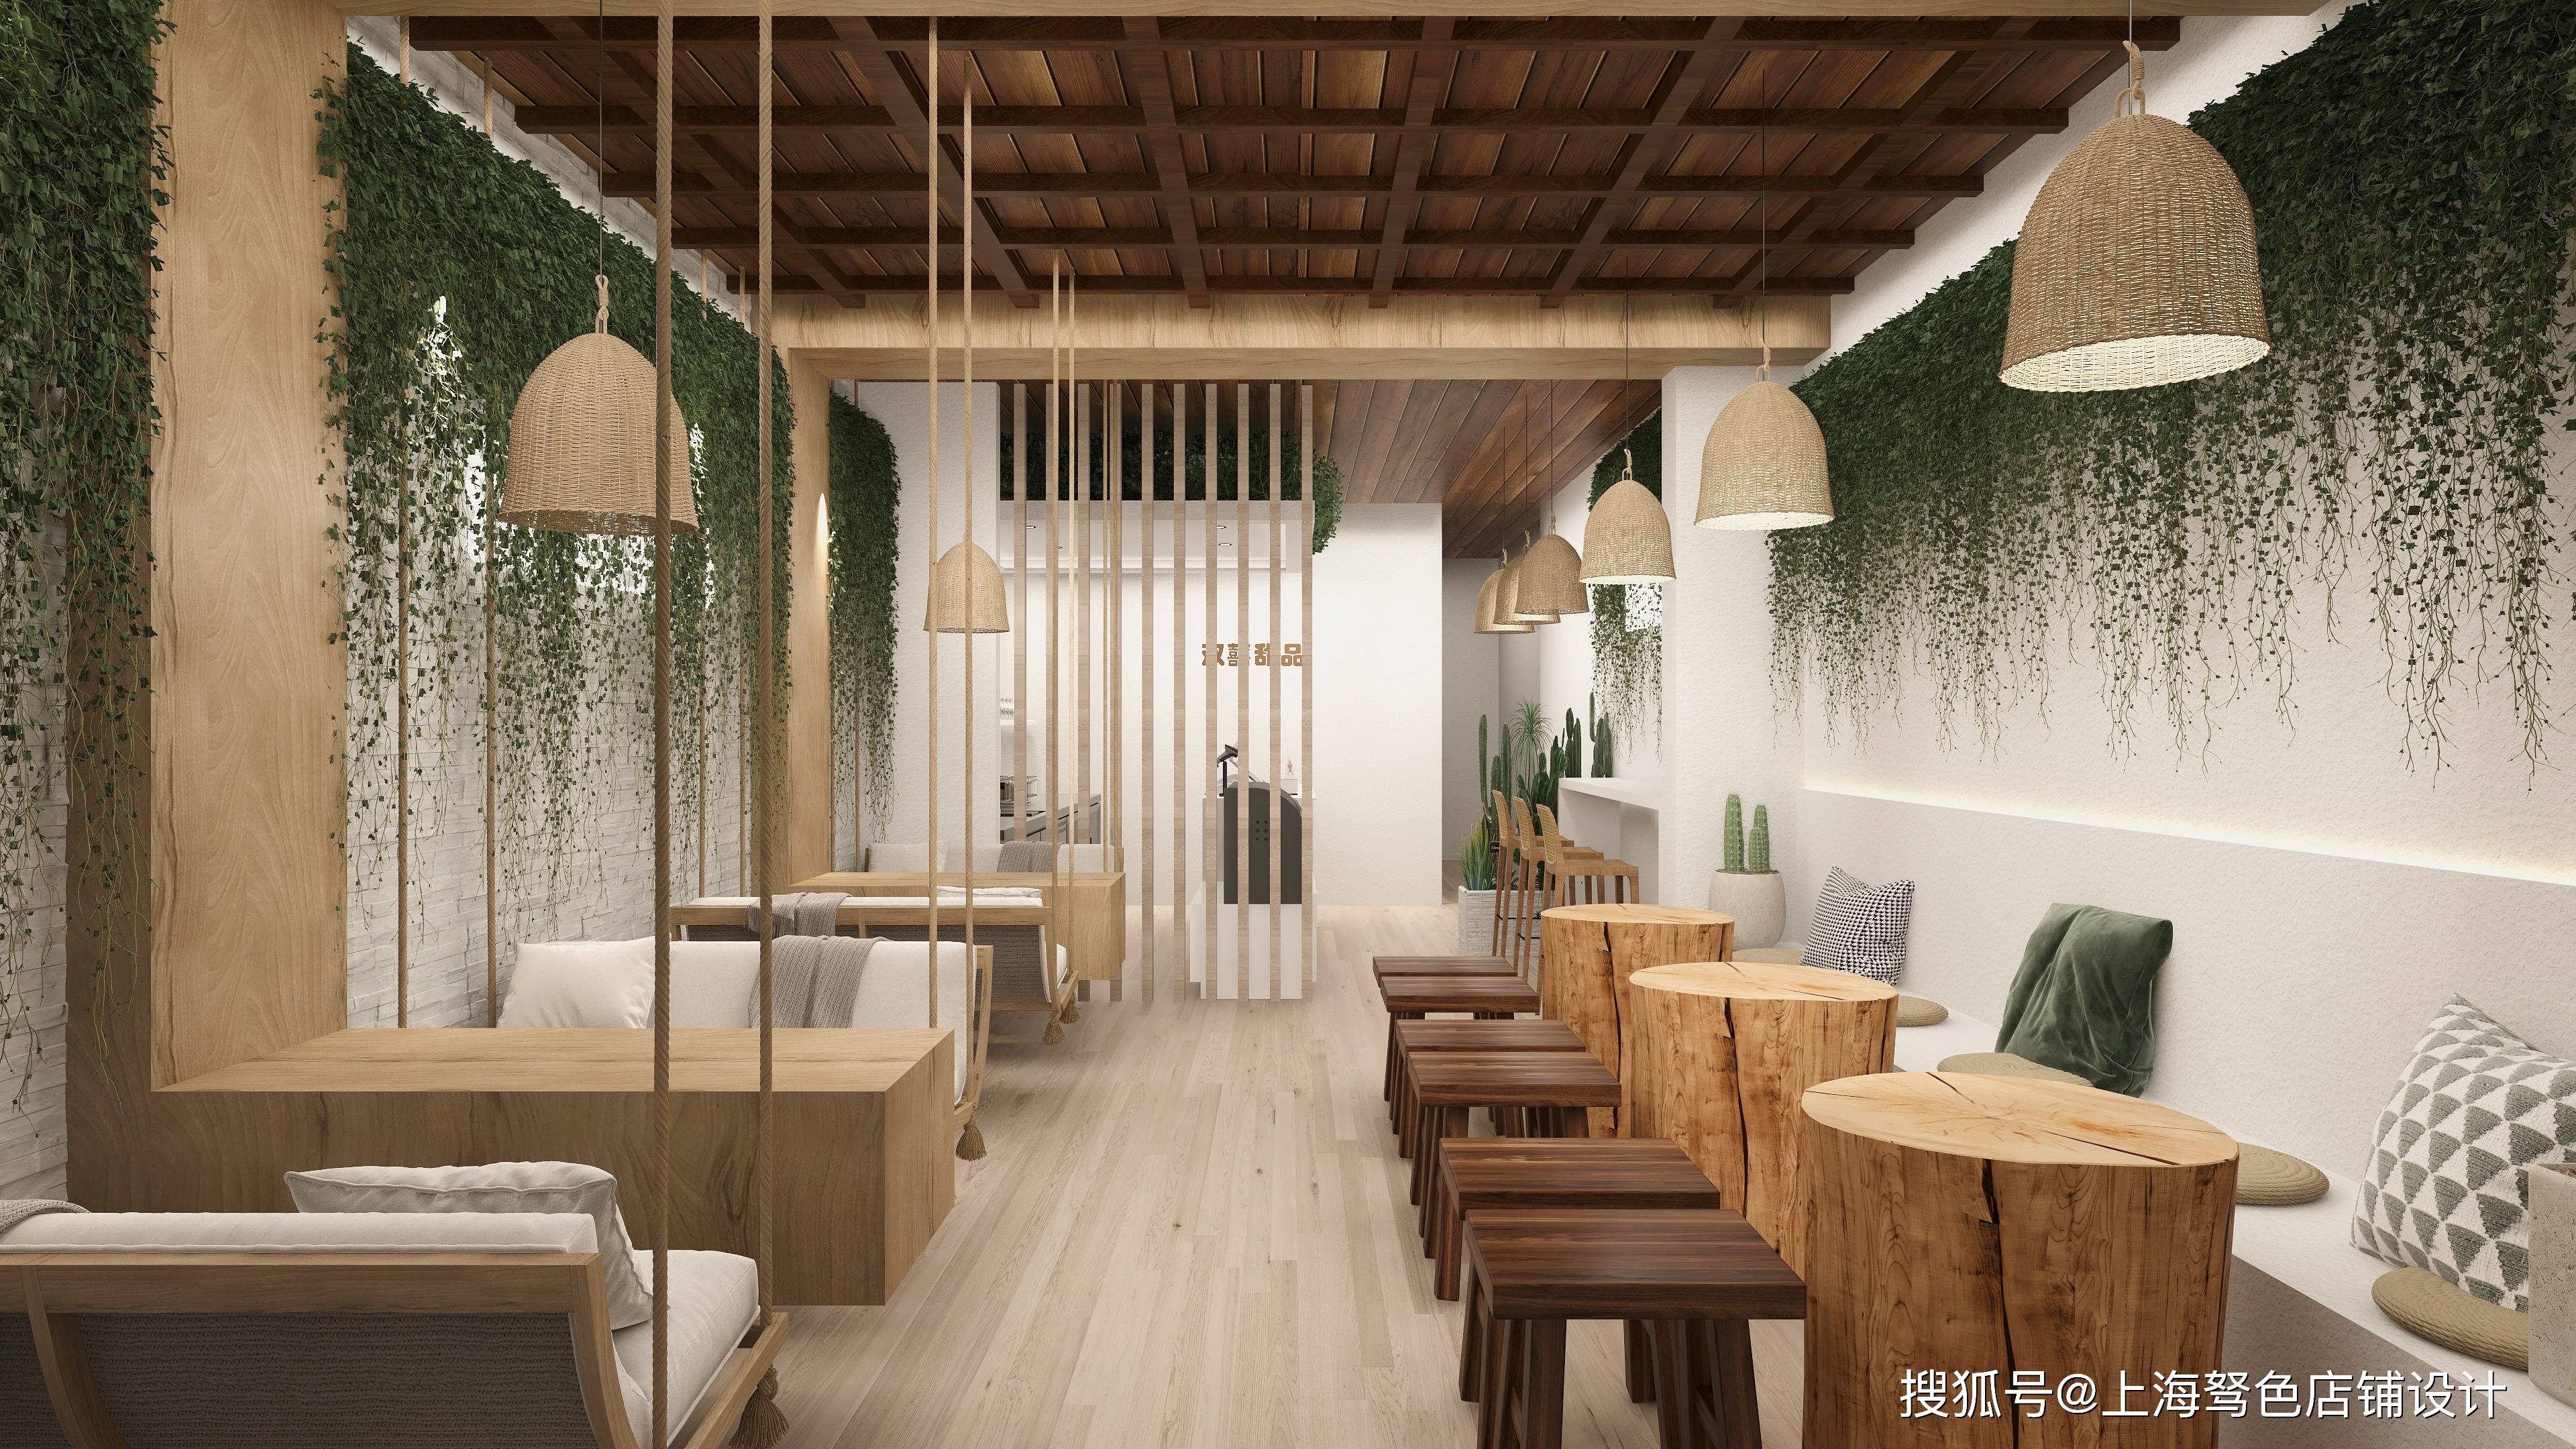 商业空间设计丨小吃店设计丨奶茶店设计丨面包店设计丨网红甜品店设计